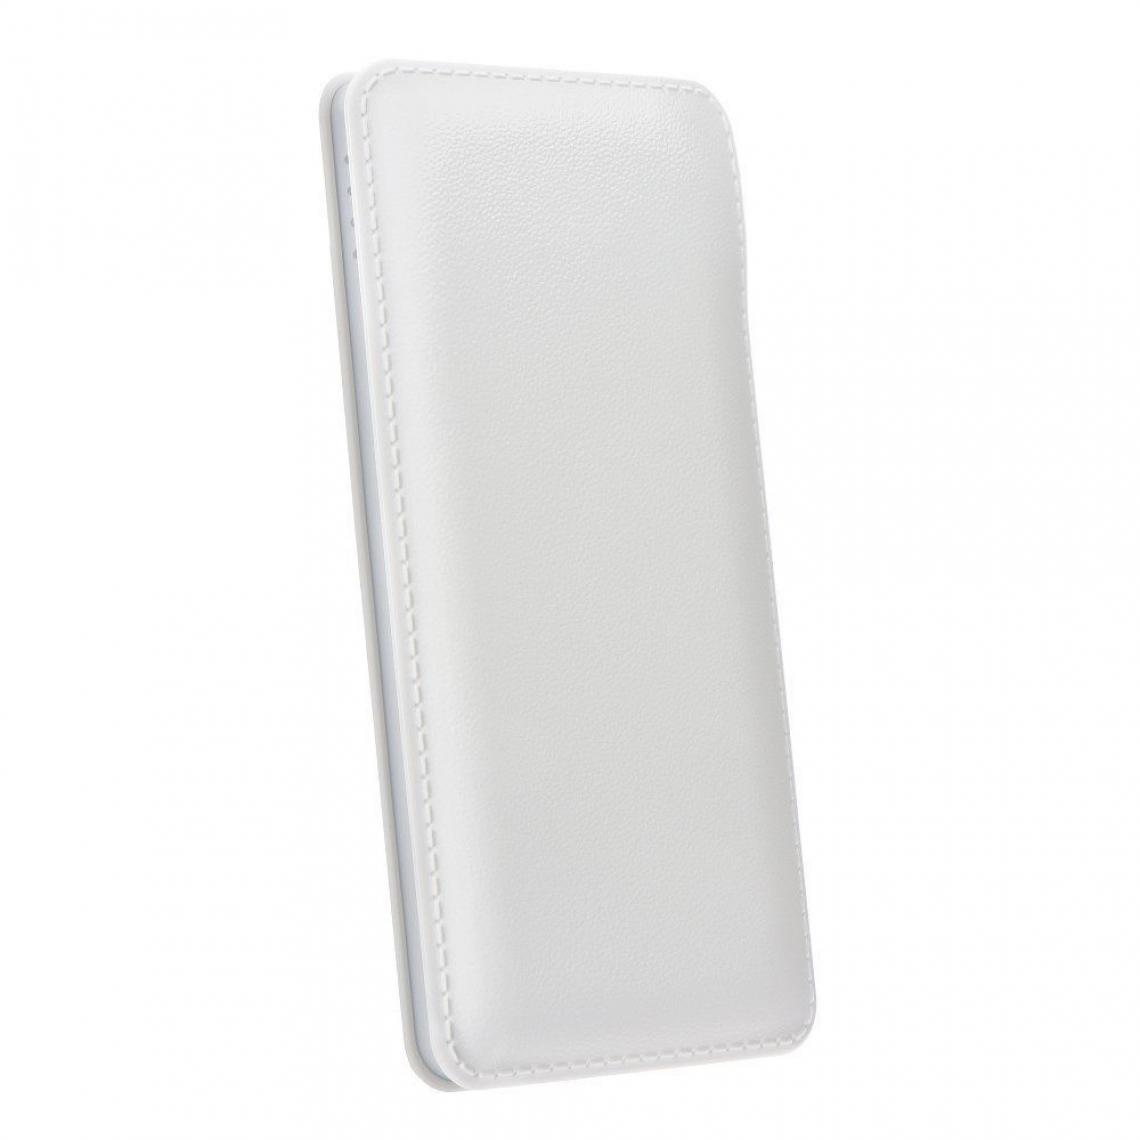 Ozzzo - Chargeur batterie externe 20000 mAh powerbank ozzzo blanc pour Samsung Galaxy A41 - Autres accessoires smartphone